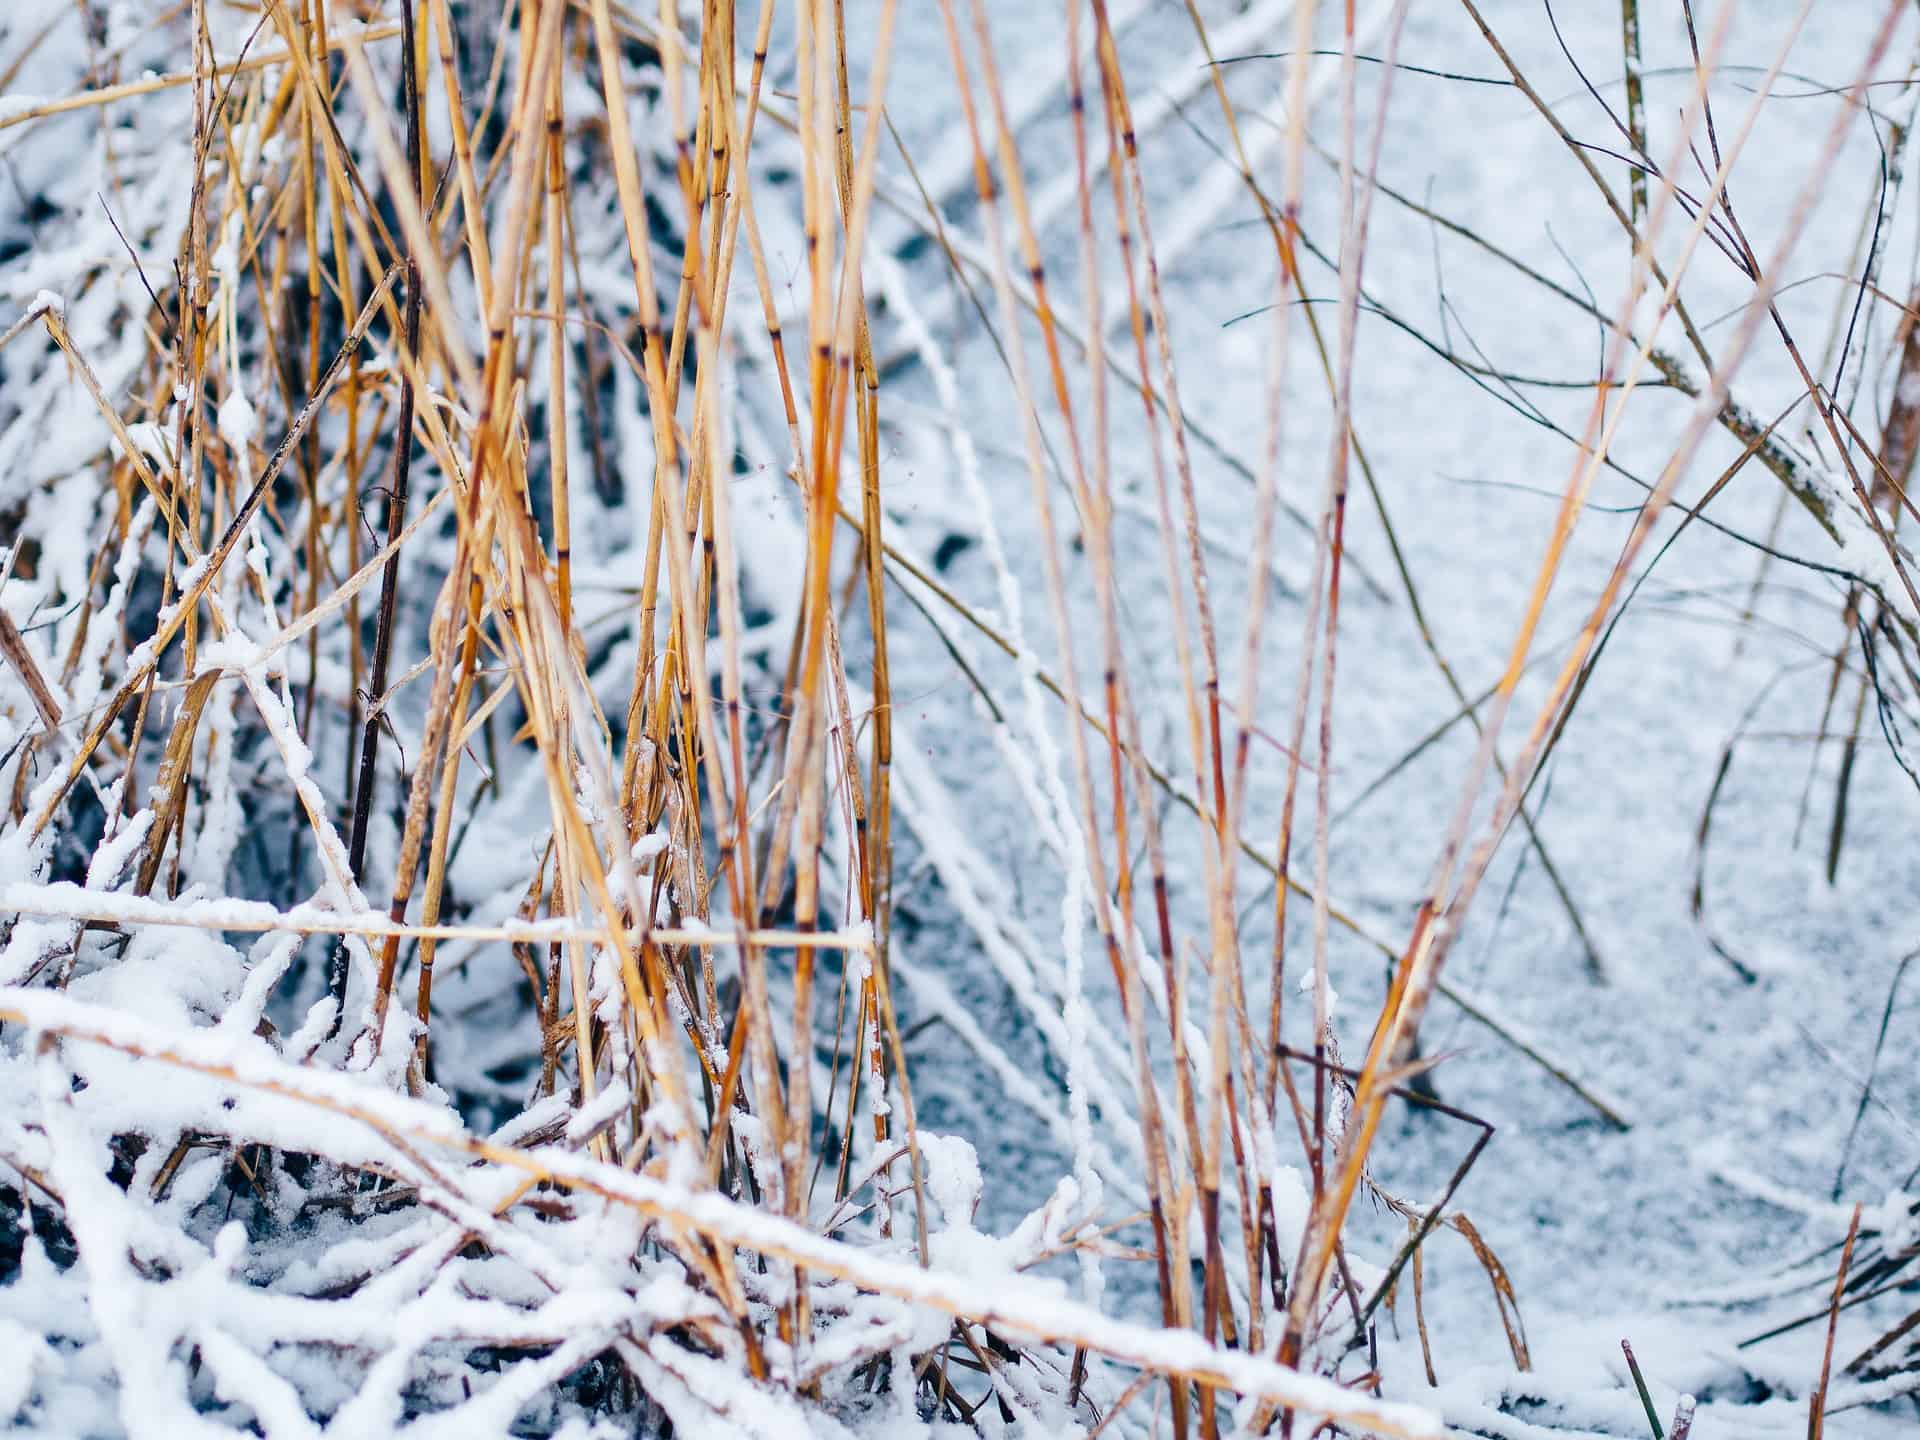 Schilf, das an den Uferzonen wächst, fördert den Gasaustausch über die Wintermonate hinweg. Foto © Pixabay